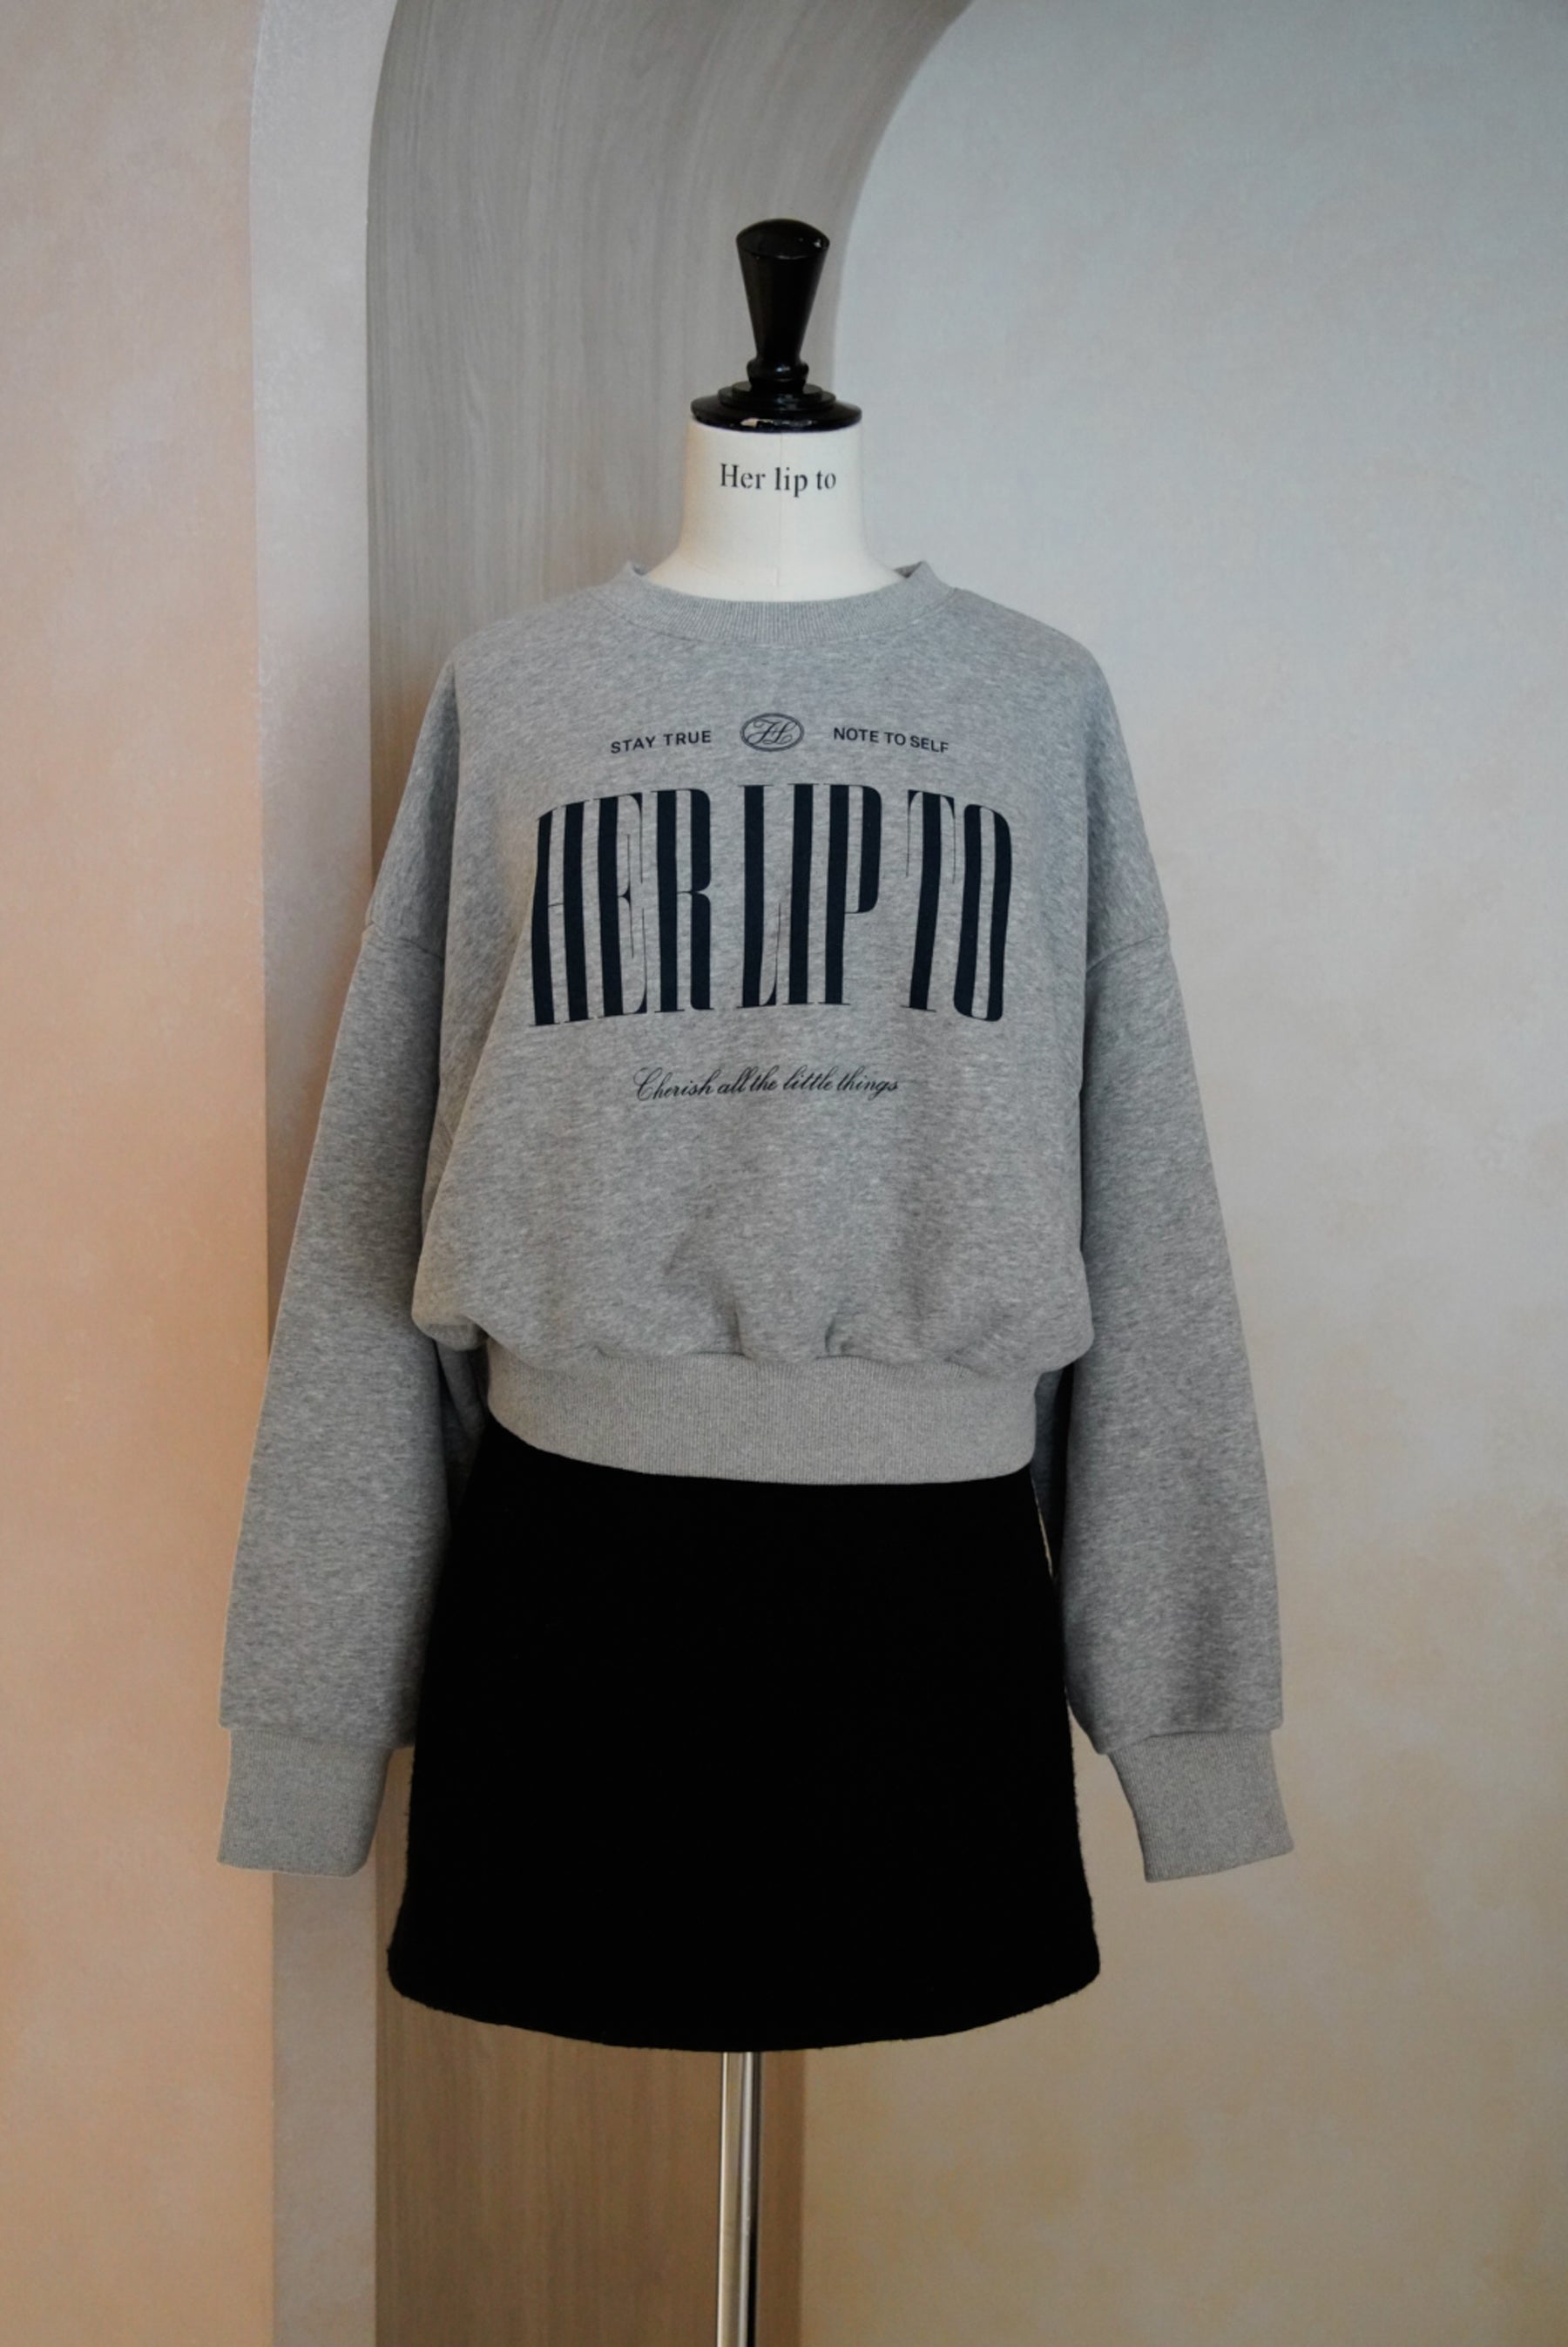 Herlipto Cherish Oversized Sweatshirtトレーナー/スウェット